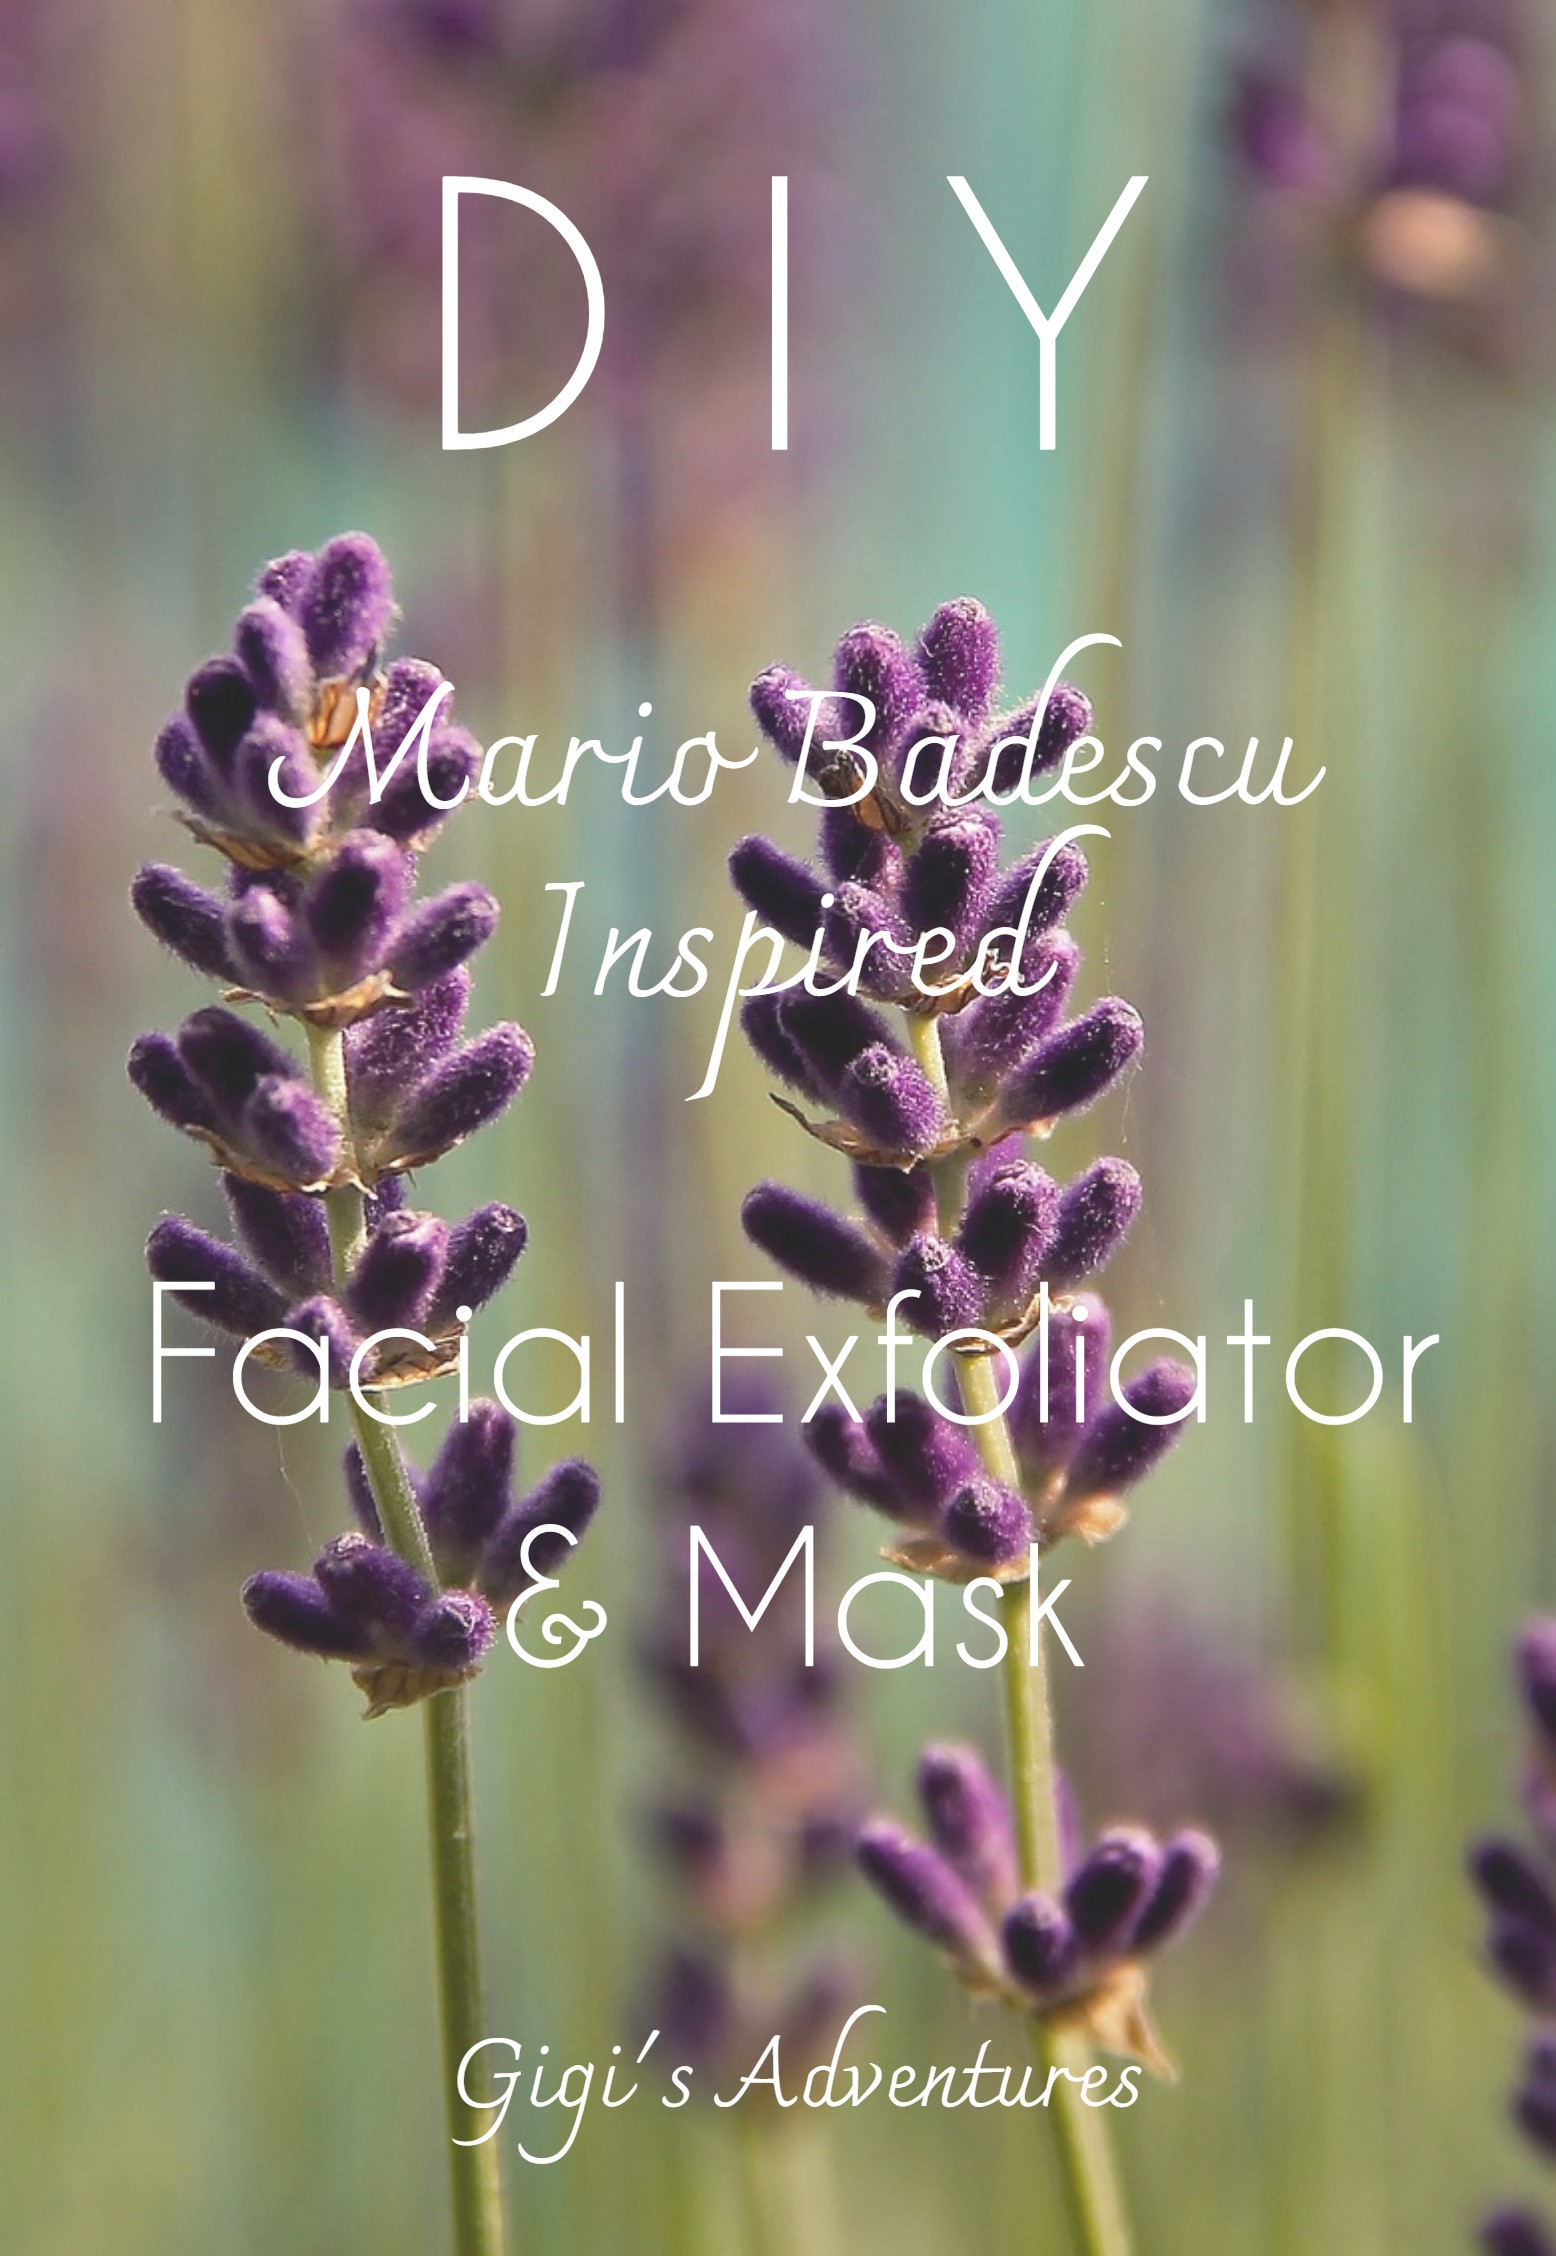 DIY Mario Badescu Inspired Facial Exfoliator/Mask